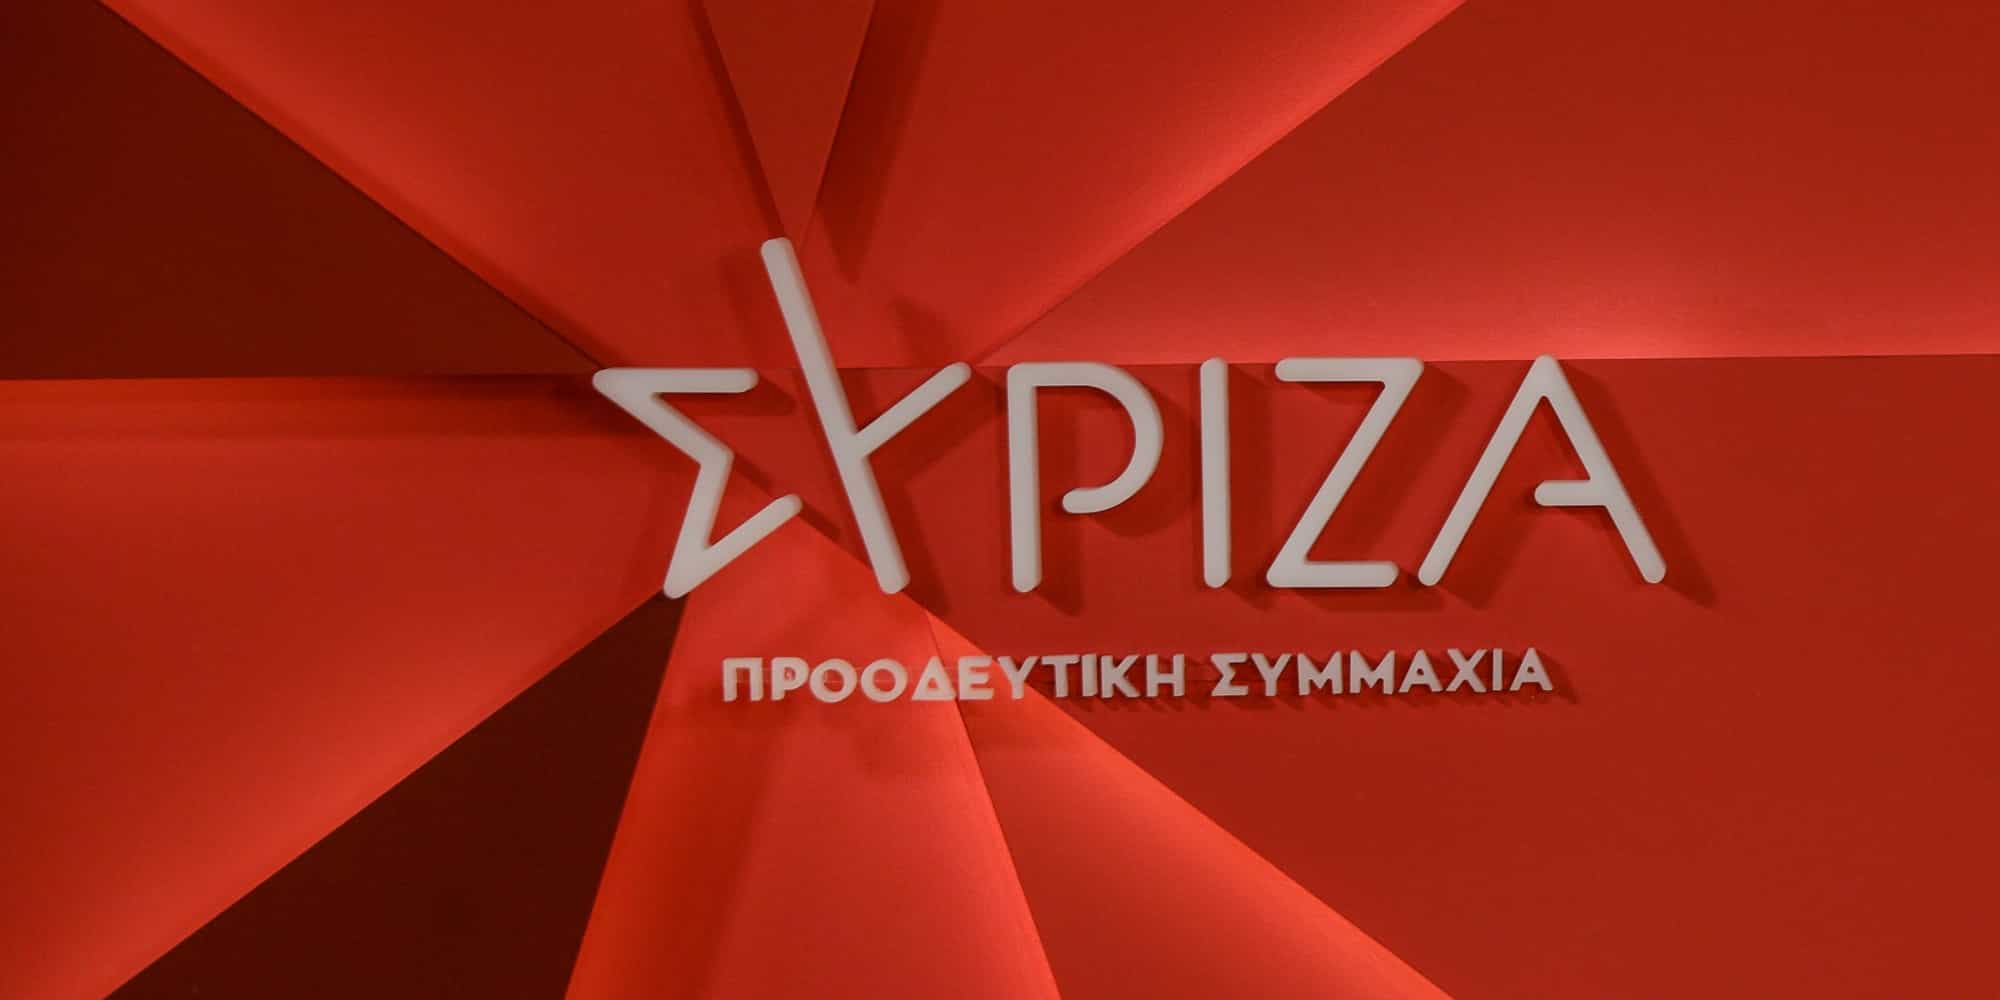 Το λογότυπο του ΣΥΡΙΖΑ